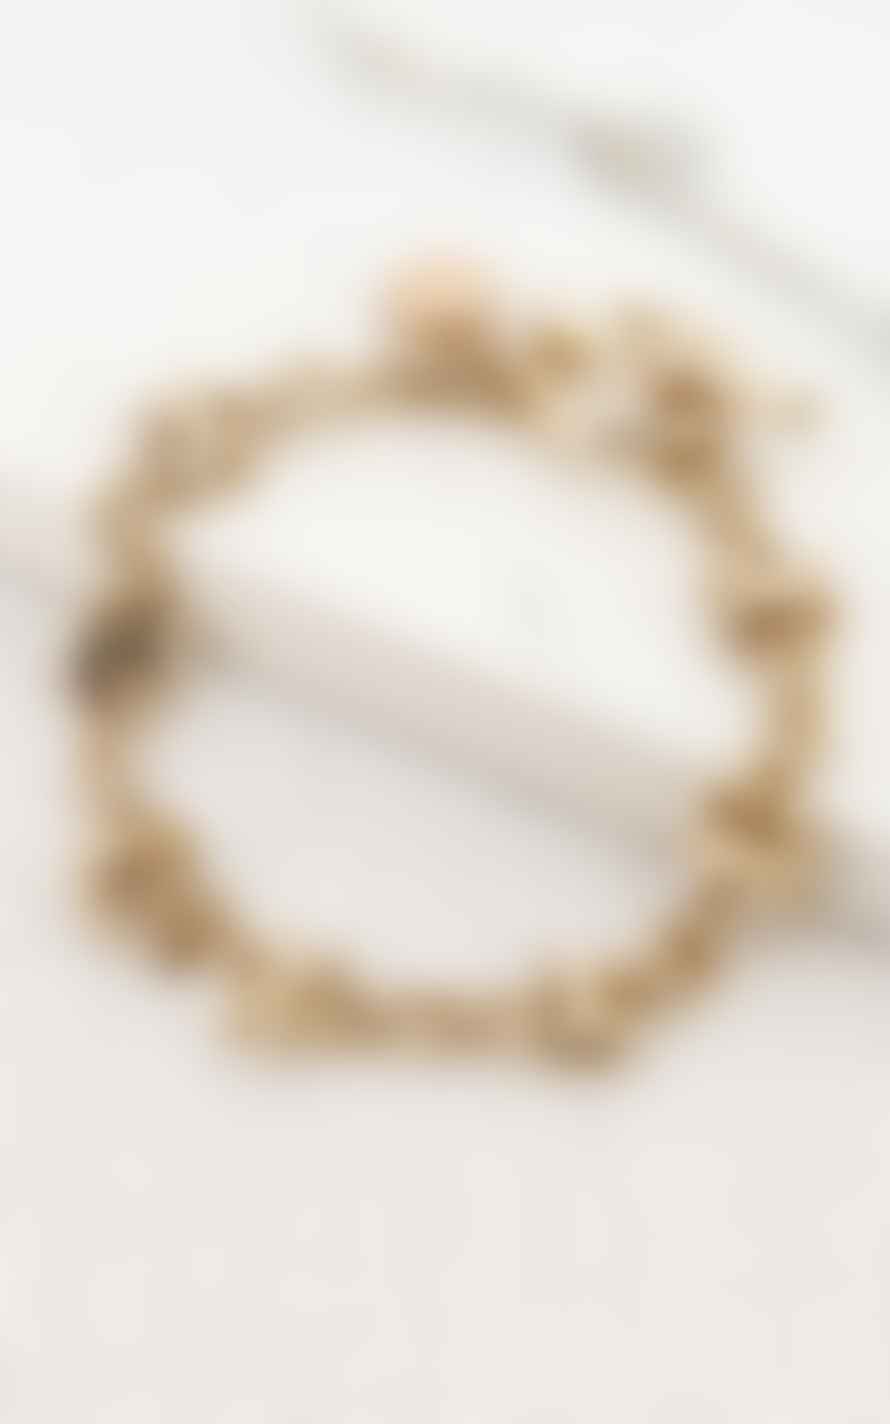 Envy Gold Cross Design T Bar Bracelet